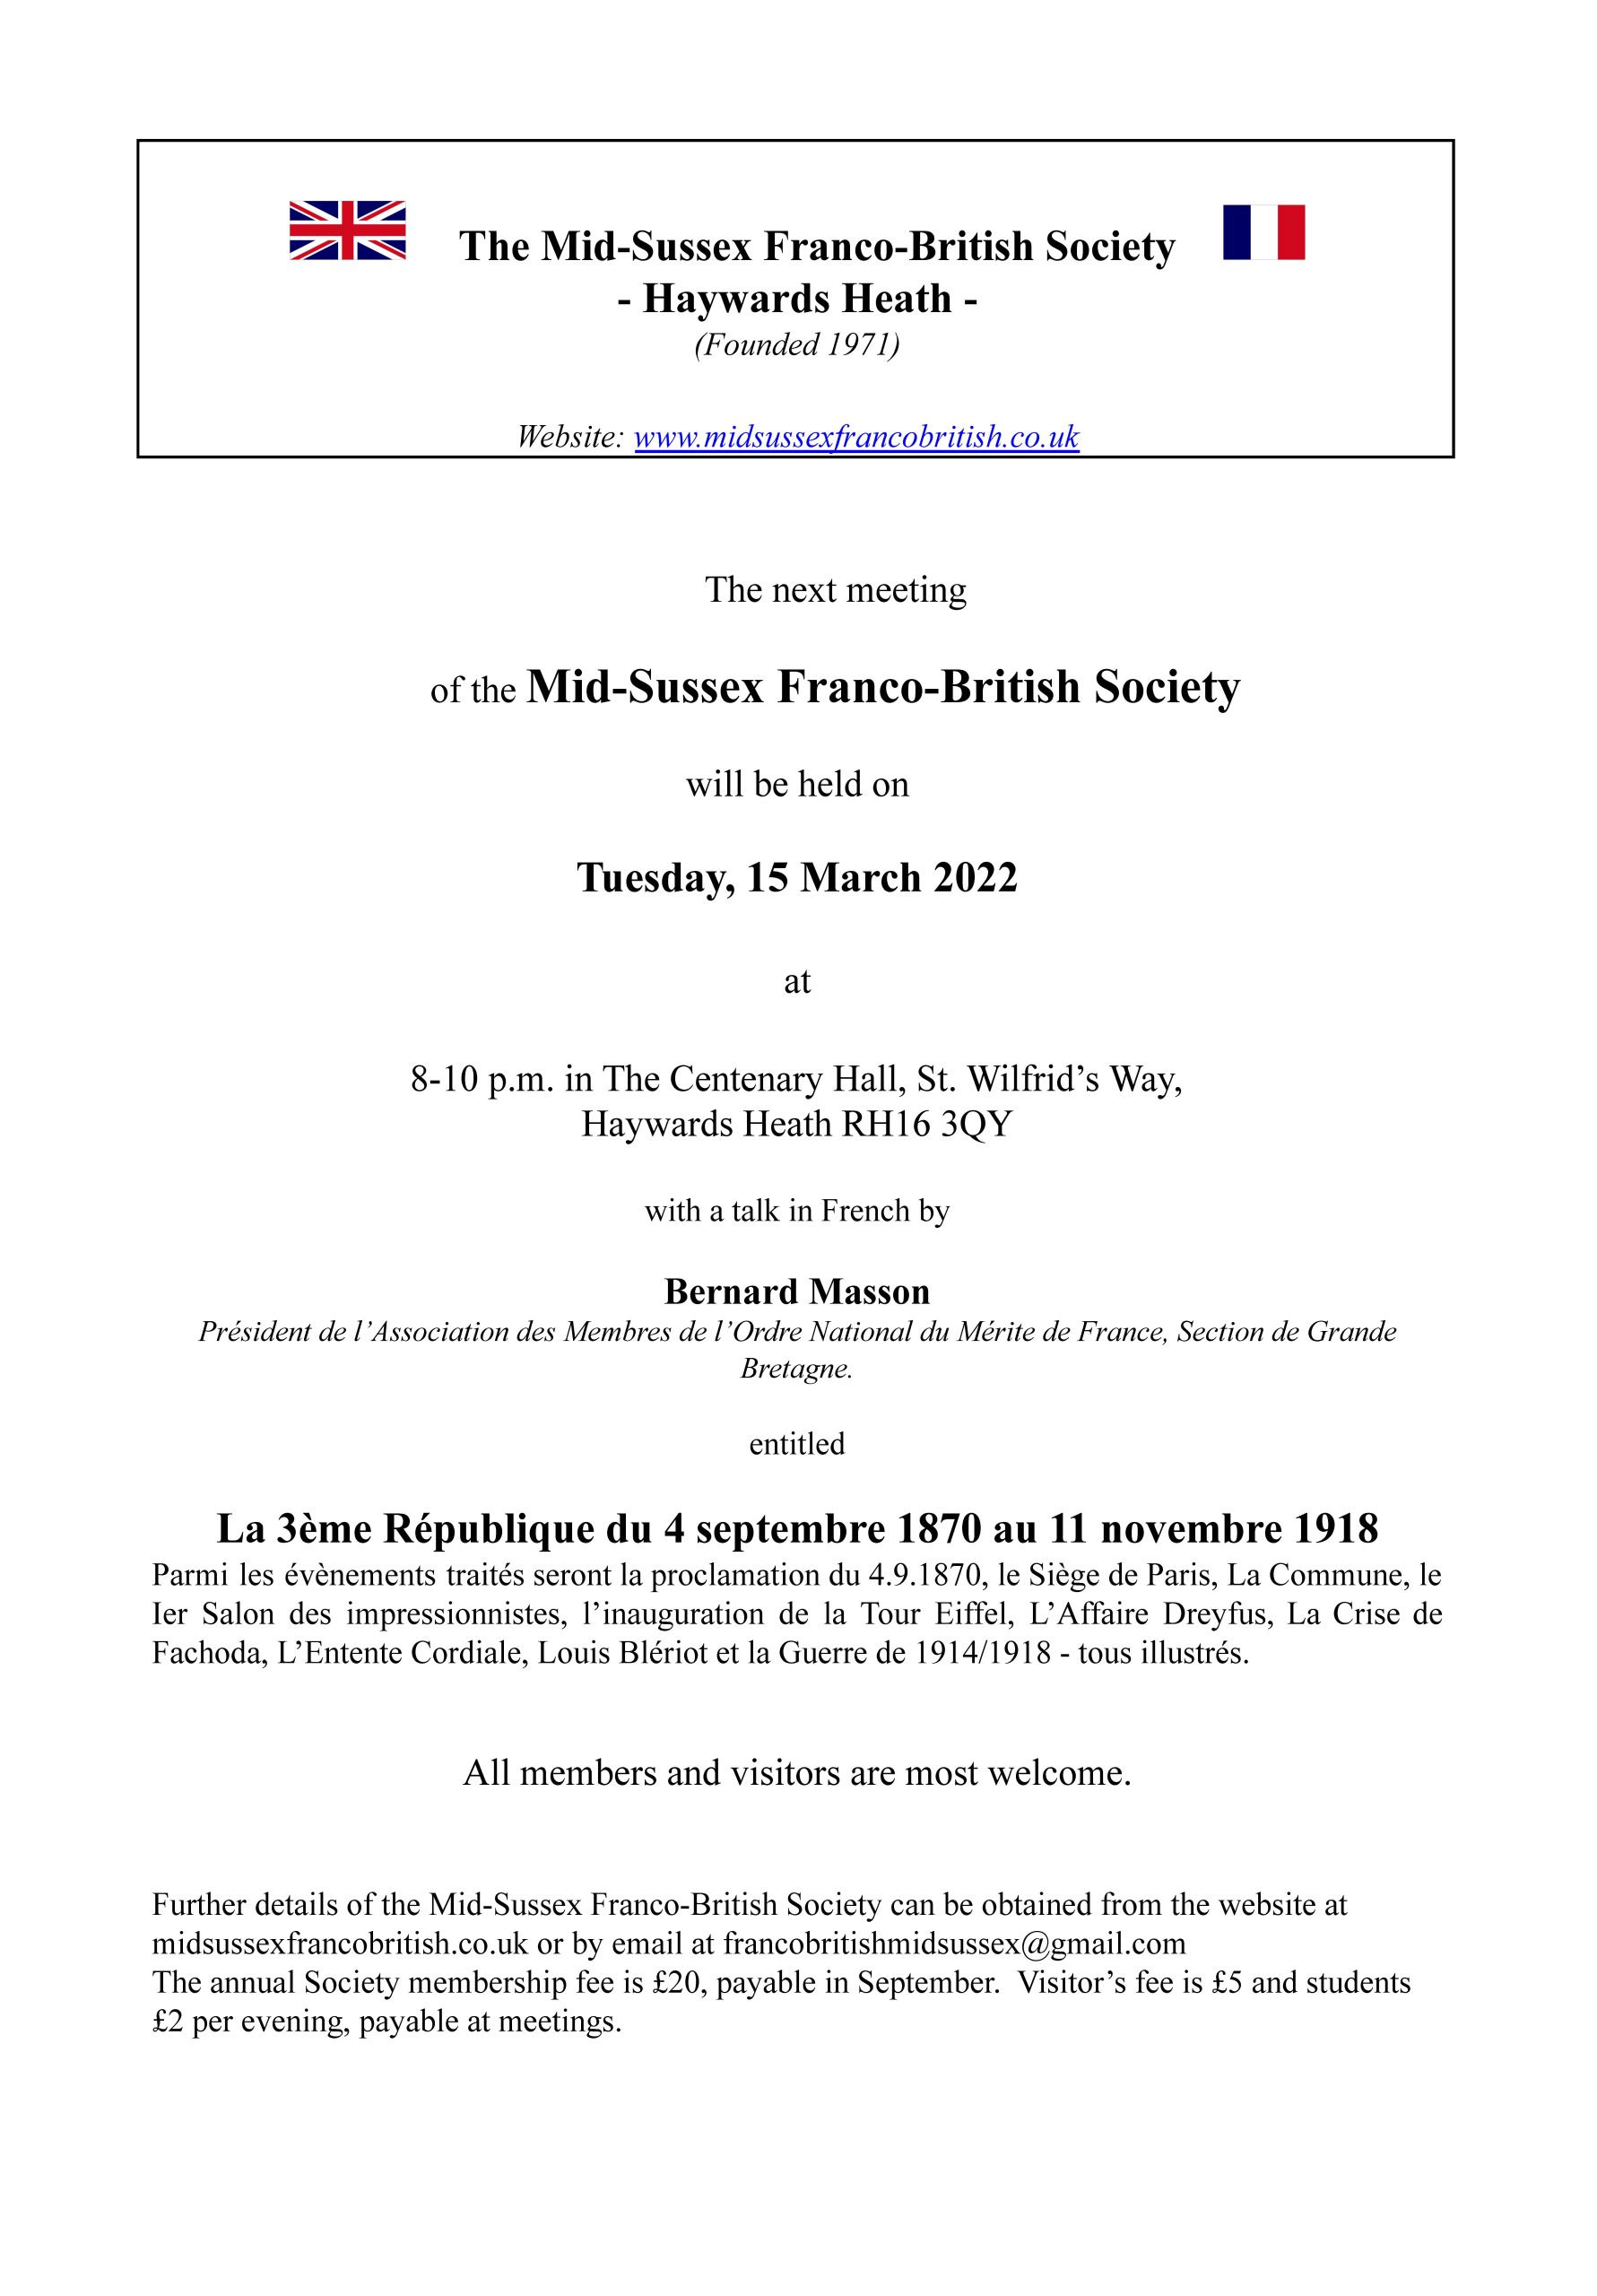 Monthly notice – March 2022-La 3eme Republique (2)